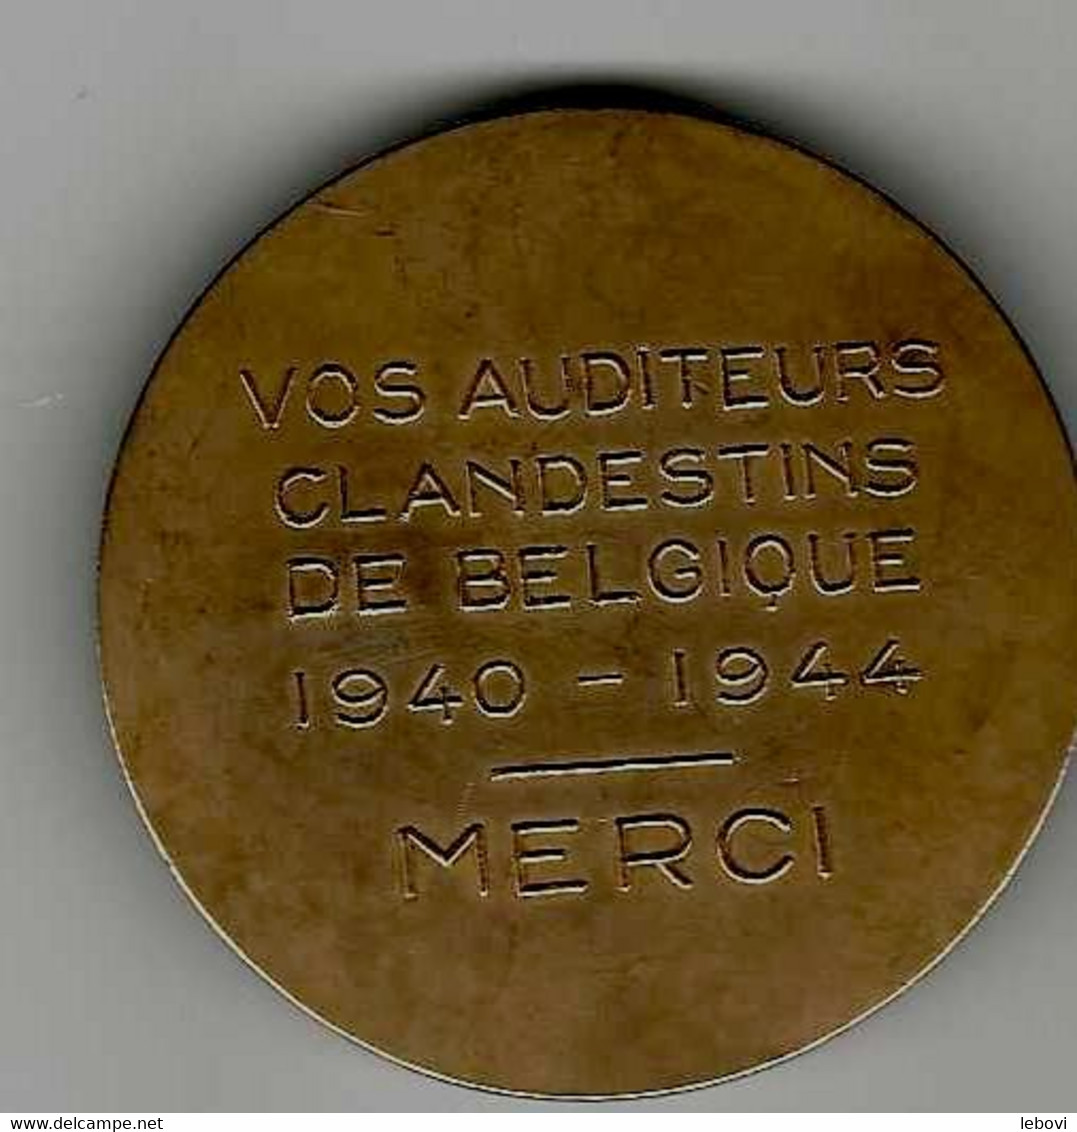 BELGIQUE – AVERS « RENE PAYOT» - REVERS «Vos Auditeurs/clandestins/de Belgique/1940 – 1944/merci » - Profesionales / De Sociedad